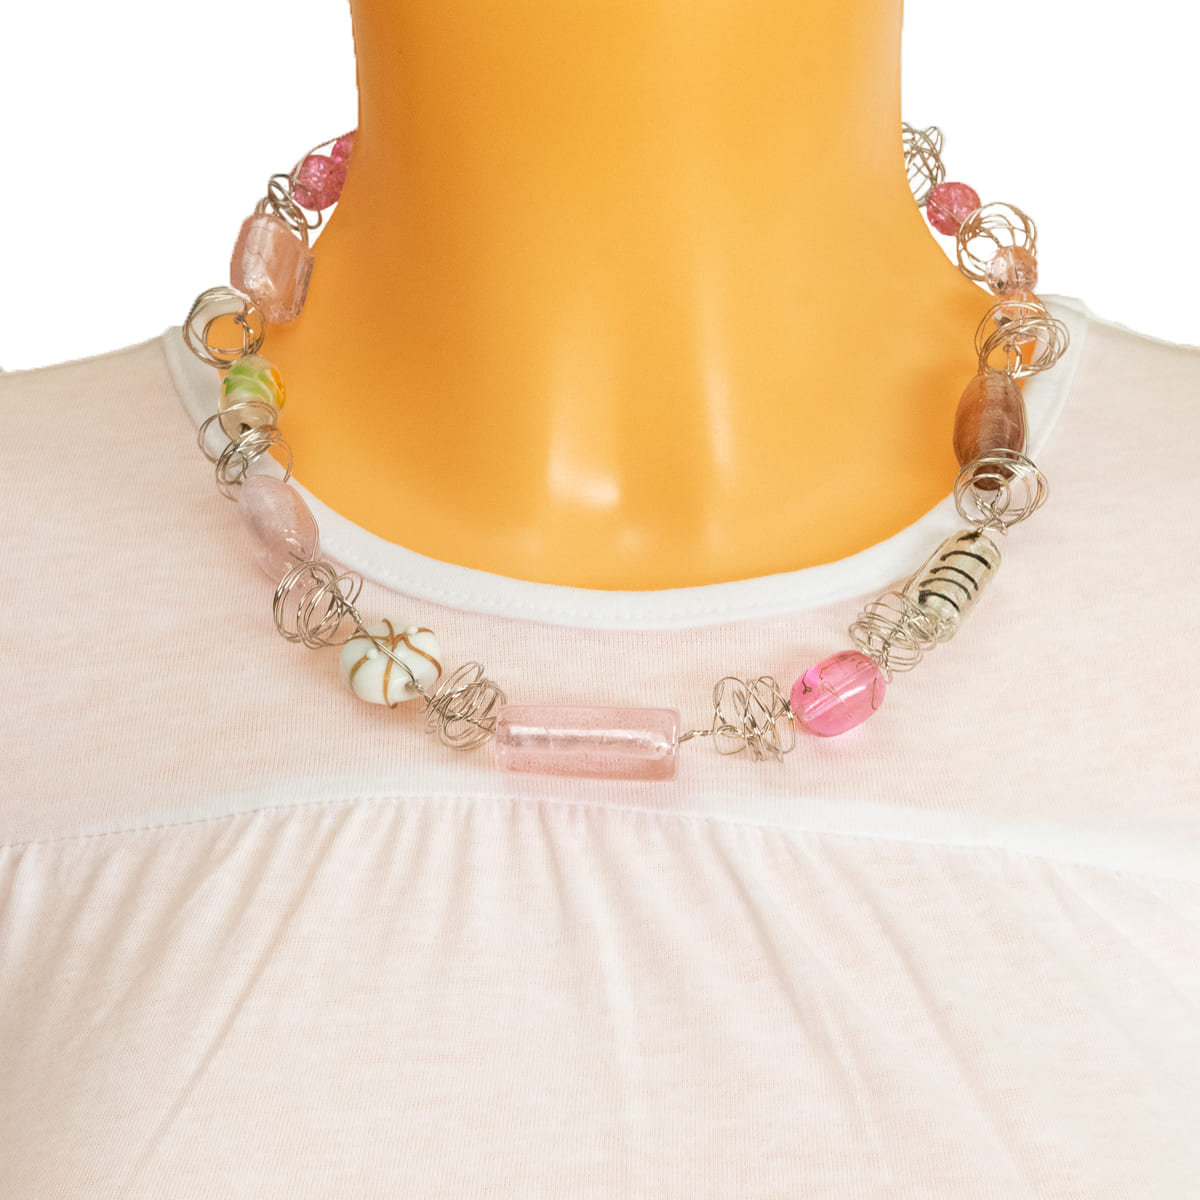 K.V. Fuchs Design Schmuck Damen Halskette in silber mit gewickeltem Draht und Schmucksteinen in pink, weiß »K-3502«